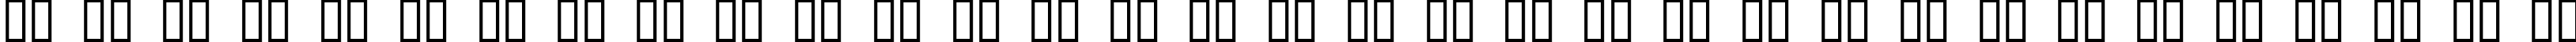 Пример написания русского алфавита шрифтом West Side Plain